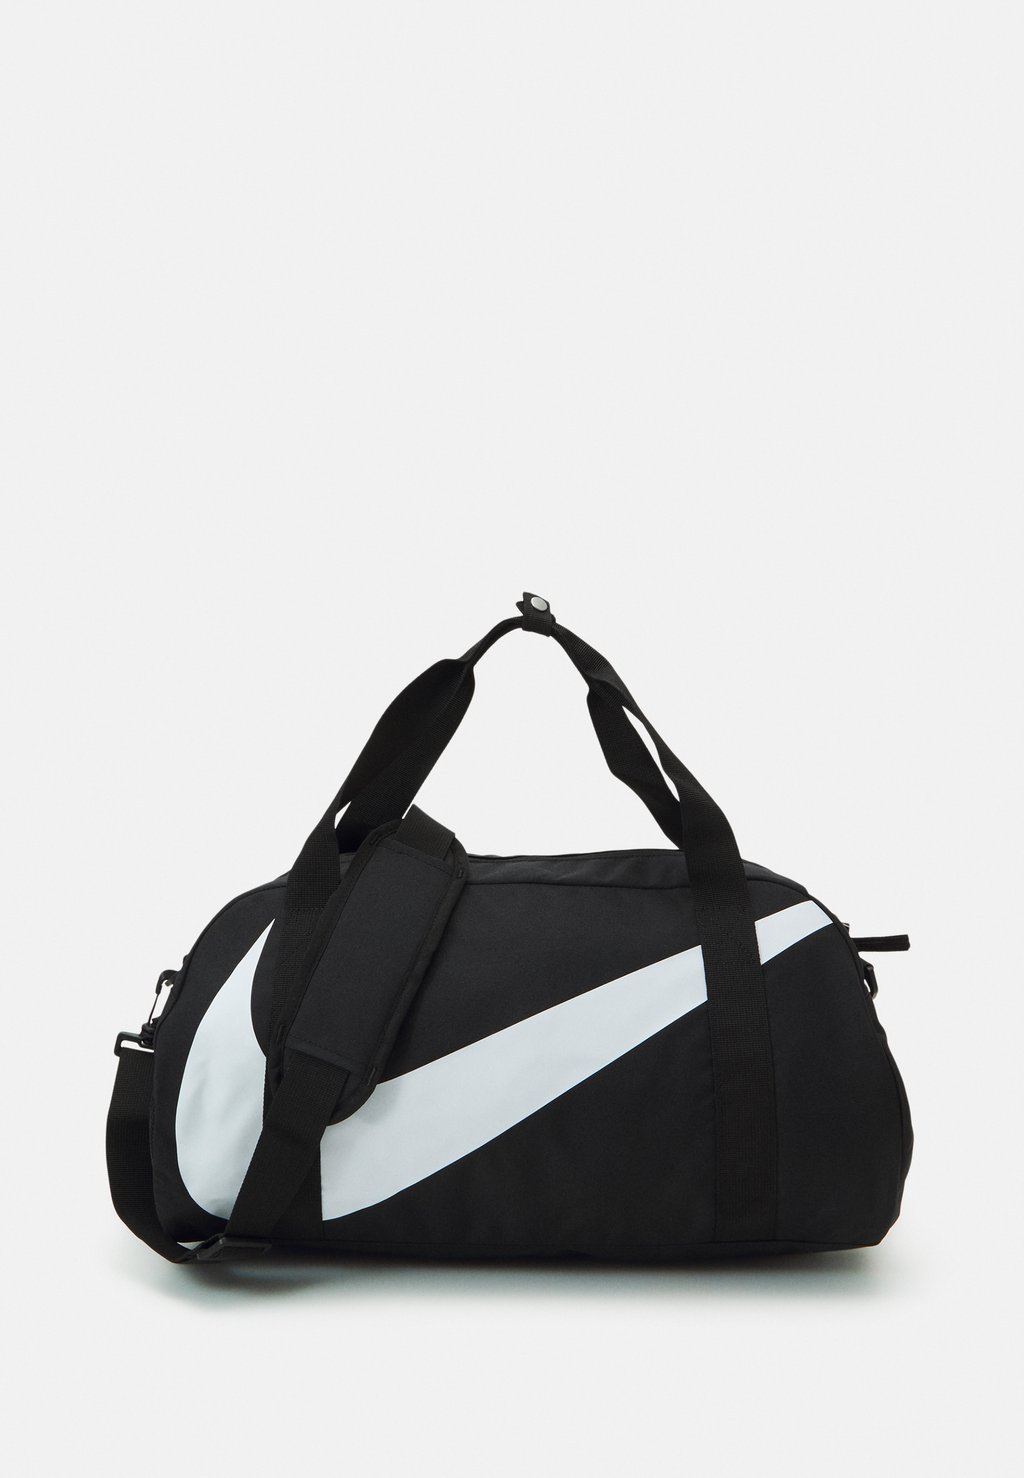 Спортивная сумка Gym Club Unisex Nike, цвет black/black/white спортивная сумка nike performance gym club retro unisex черный зеленый бежевый